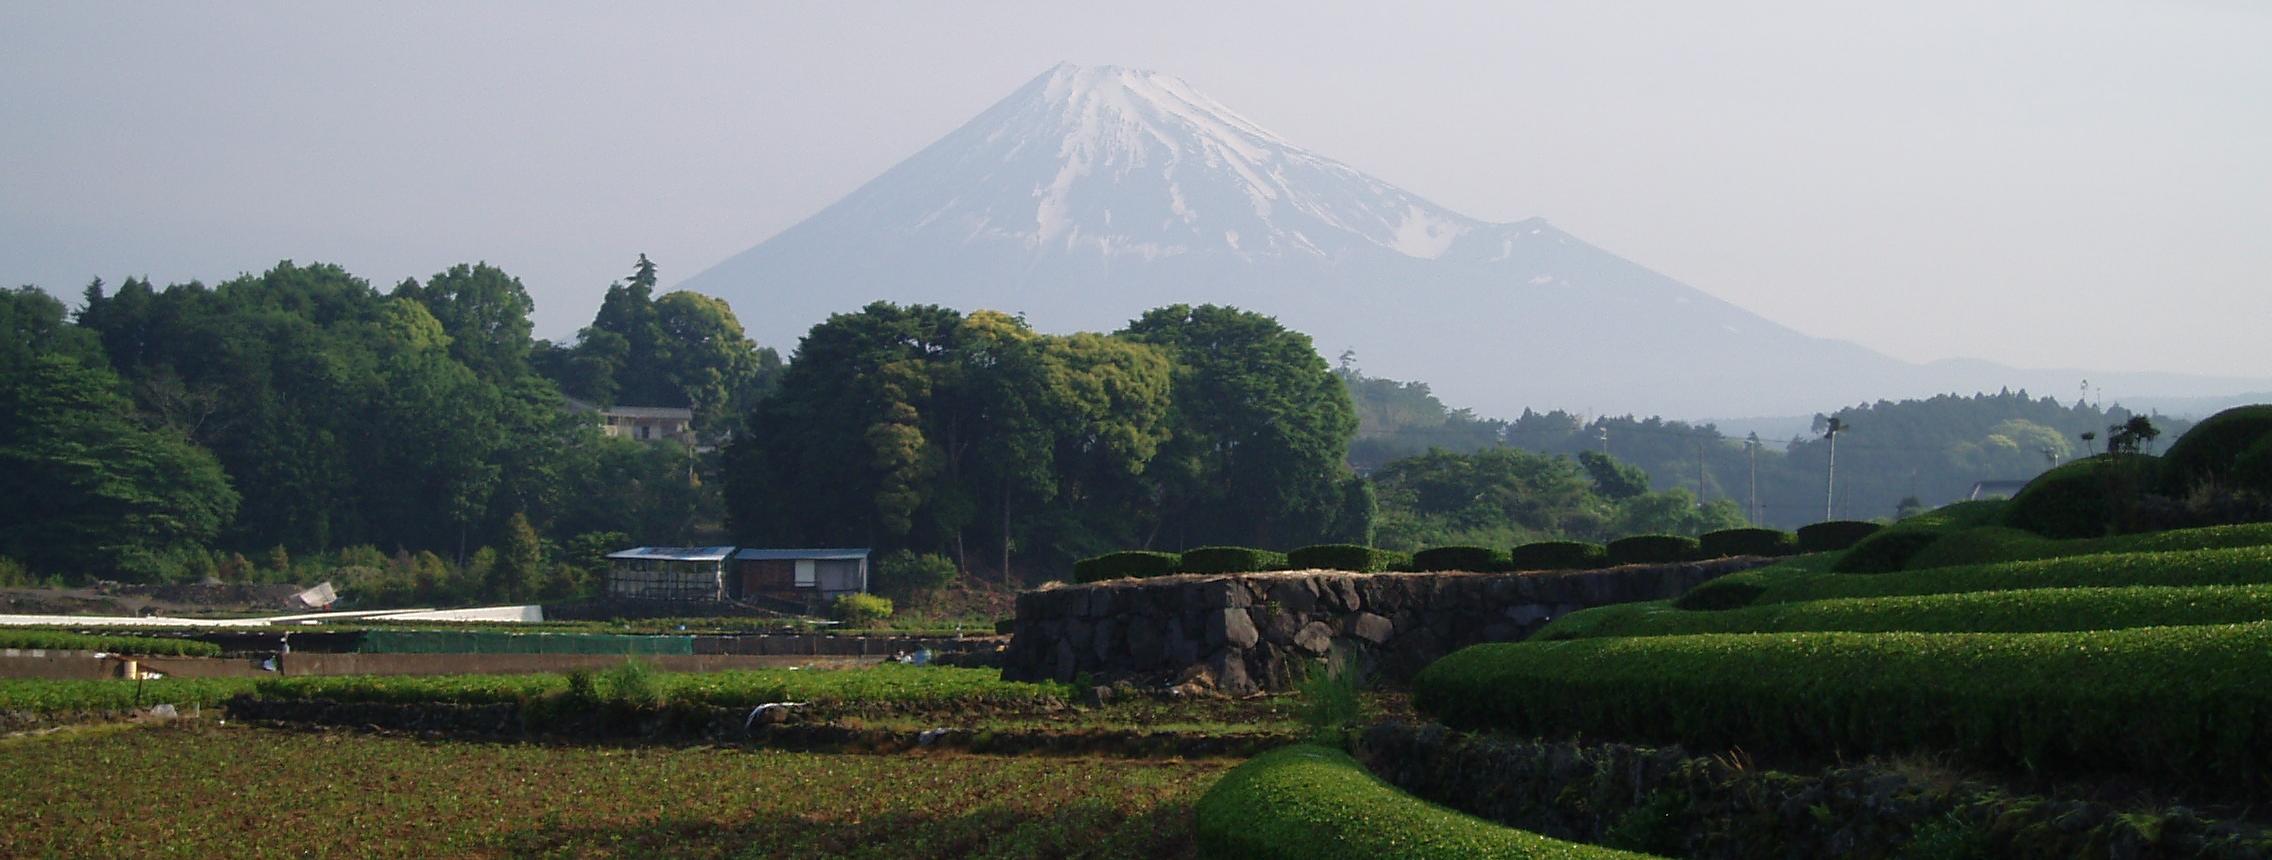 新緑の朝に霞む春姿の富士(2008年5月 富士市)